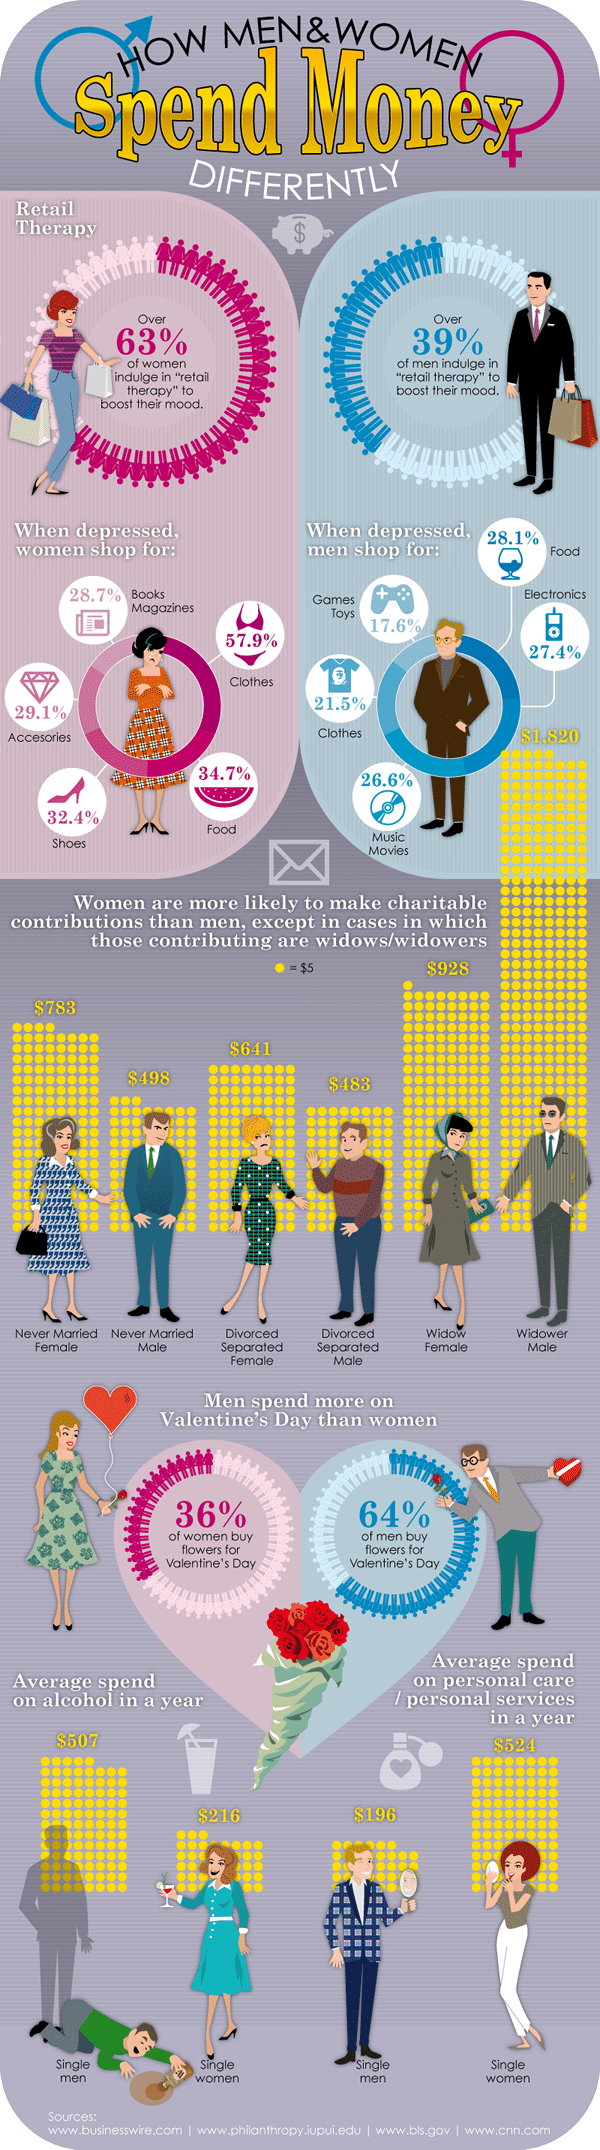 men-women-spending-habits-infographic